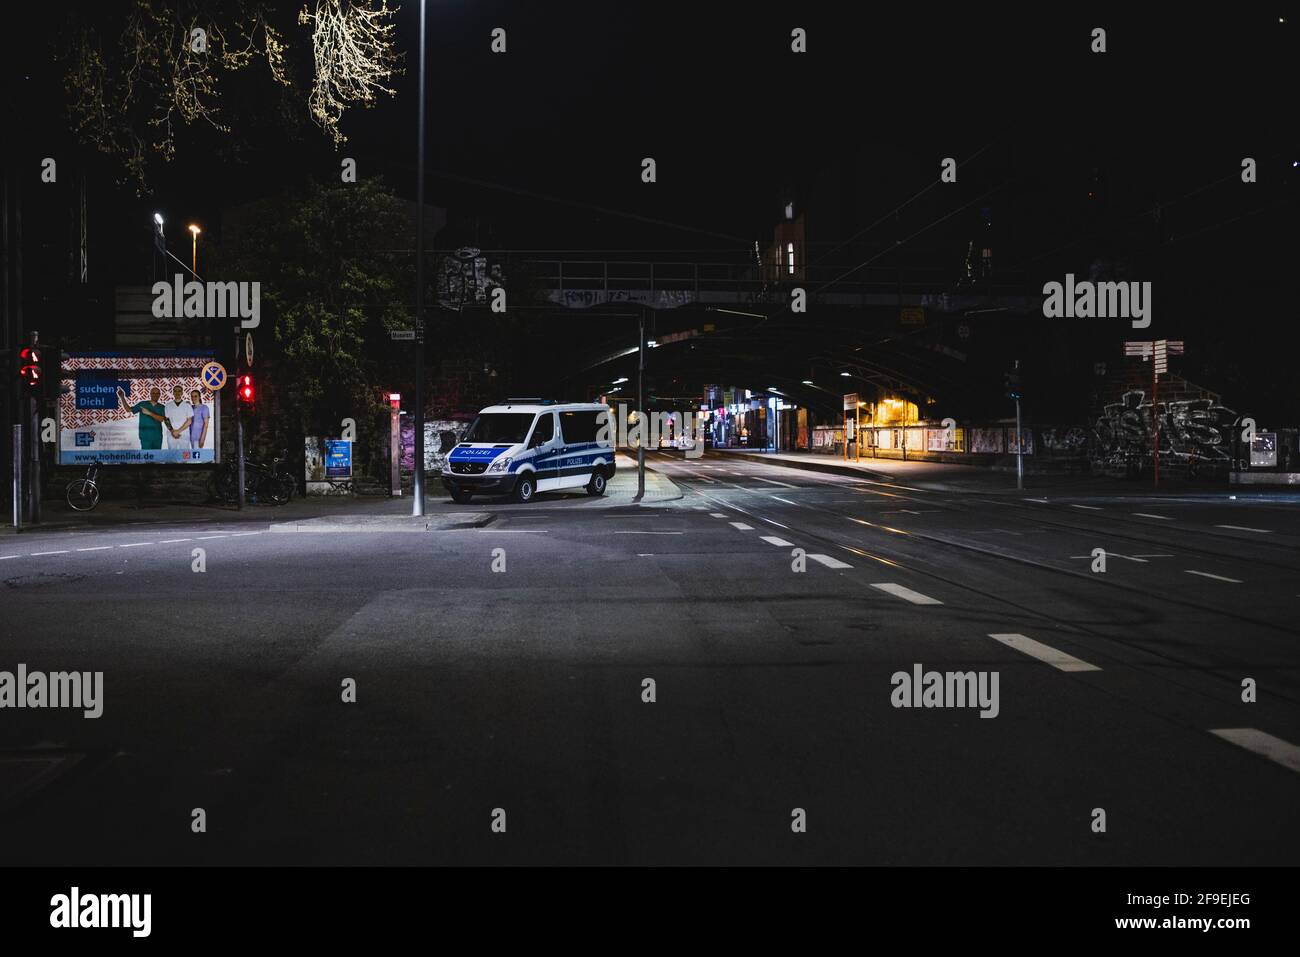 Kšln, Innenstadt, 17.04.21-18.04.21: Bilddokmentation der Ausgangssperre von 21Uhr bis 5Uhr, Viele Polizeiwagen stefem und kontrollieren. Banque D'Images